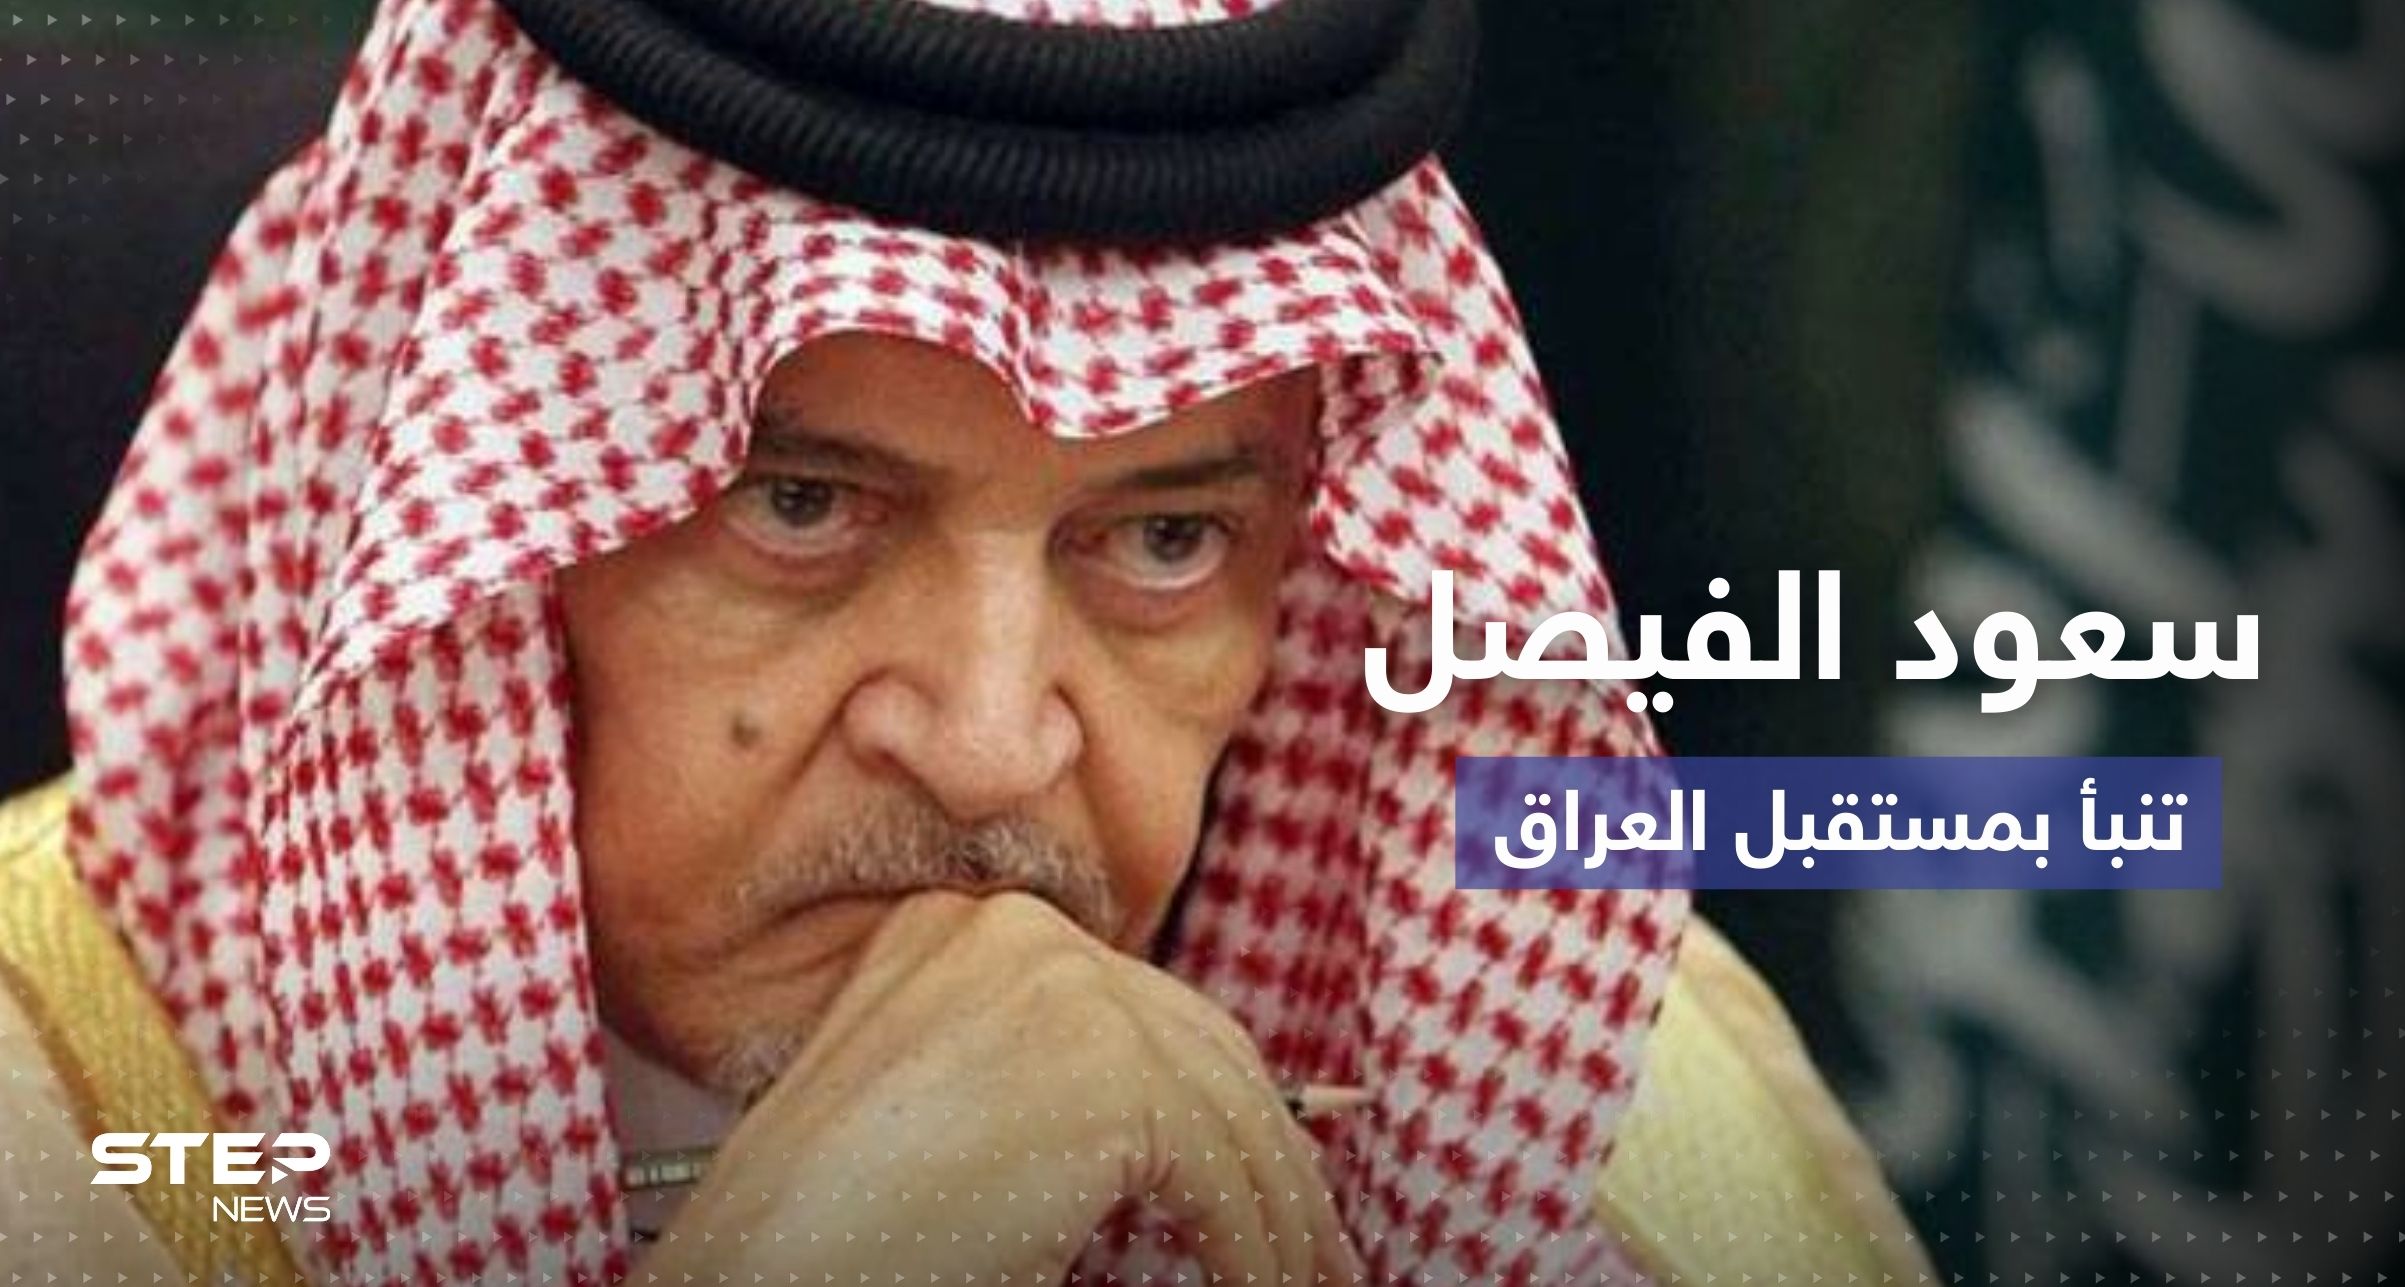  سعود الفيصل في مقابلة سابقة: صدام حسين ليس المشكلة